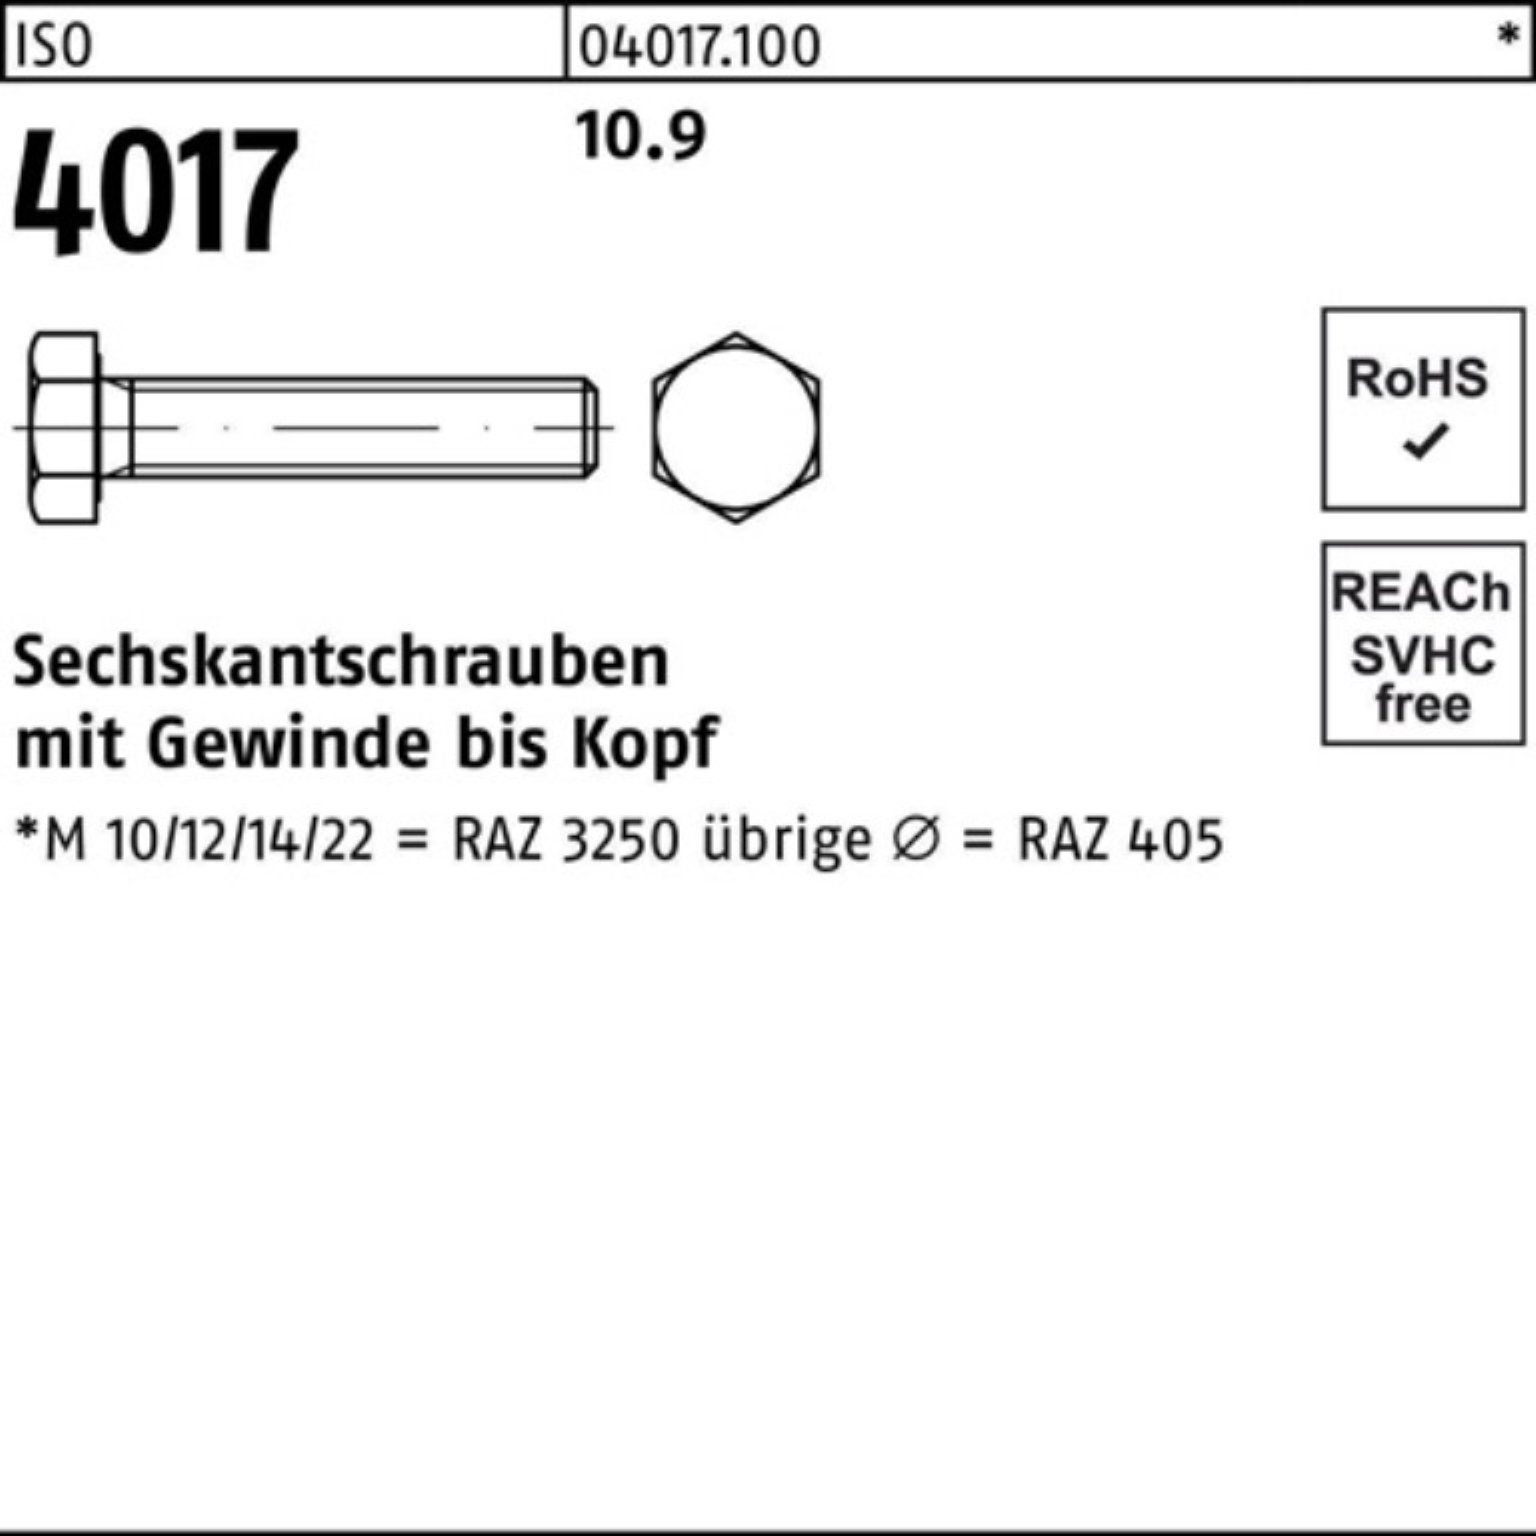 Bufab Sechskantschraube 100er Pack M42x ISO ISO Sechskantschraube 4017 130 40 10.9 1 Stück VG